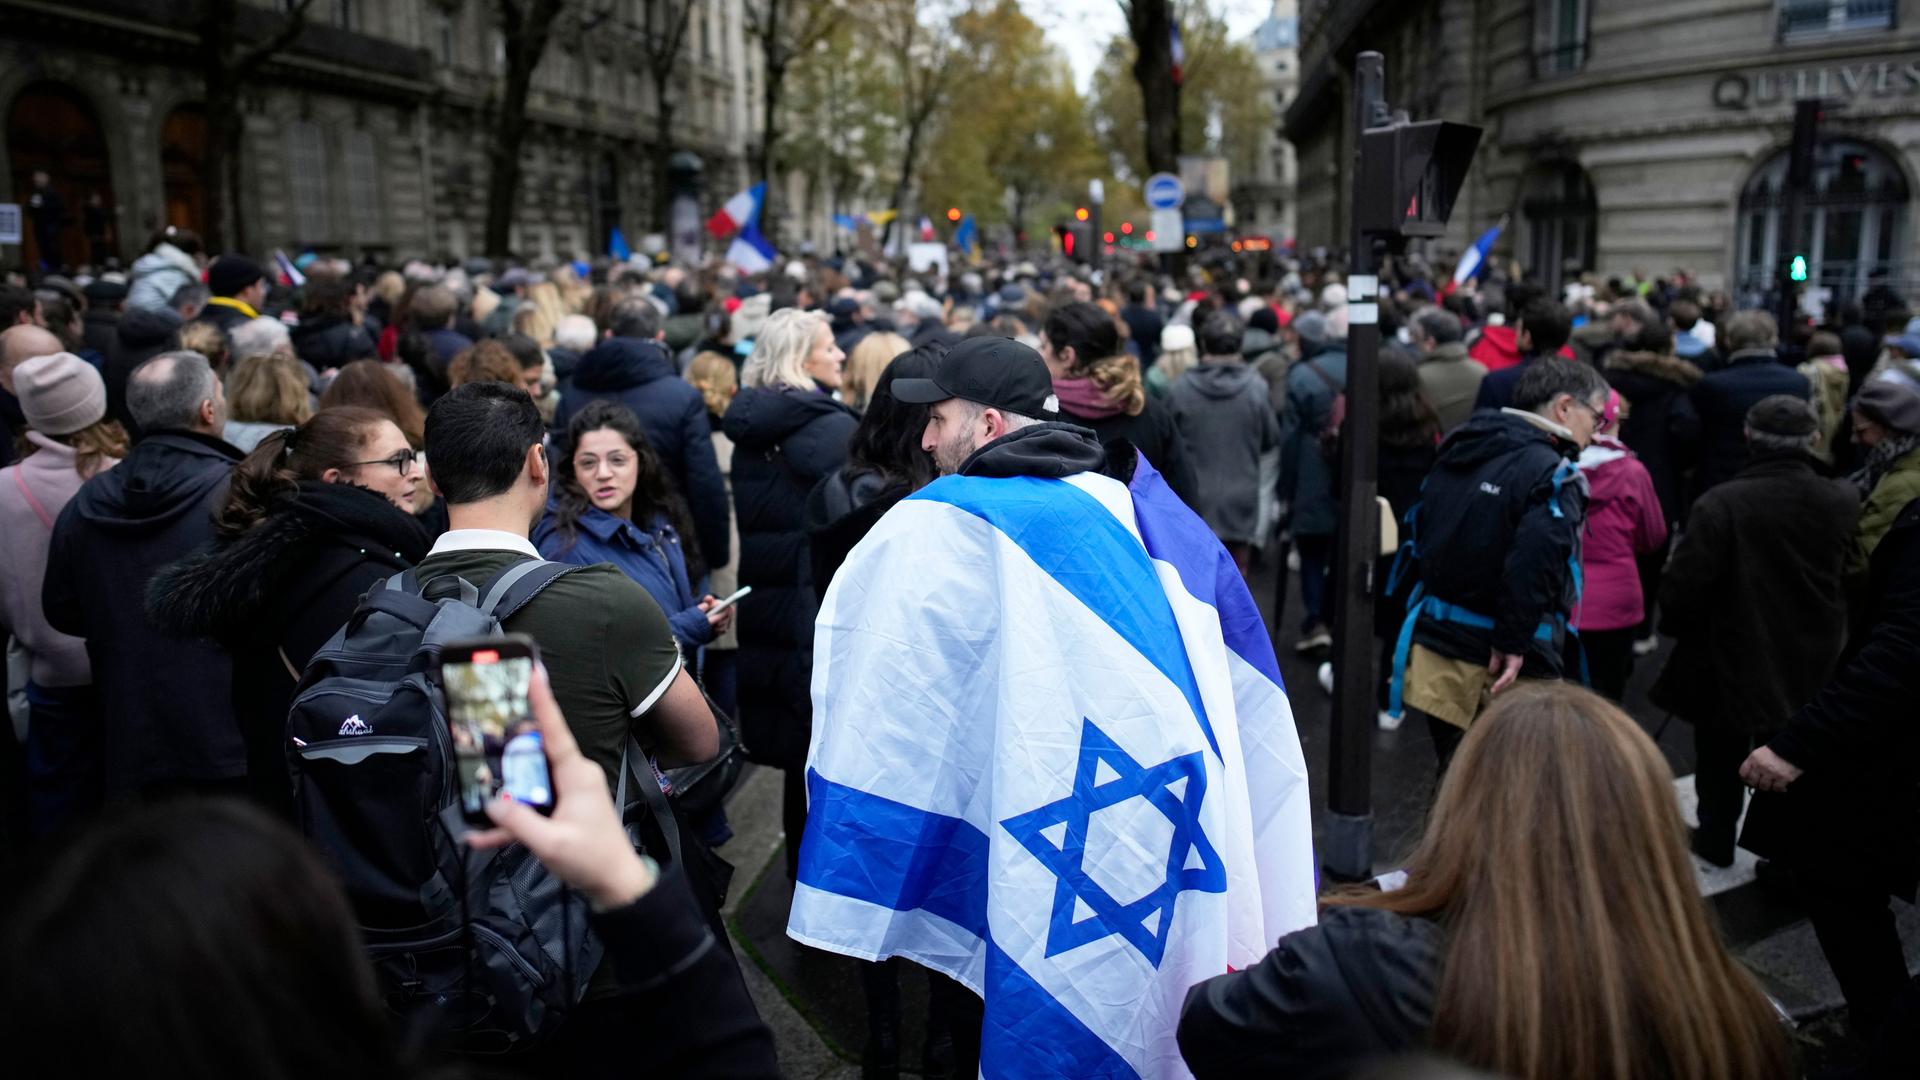 Das Bild zeigt eine große Menschenmenge, die durch eine Straße in der Innenstadt zieht. Im Bildzentrum ein Mann, der sich eine israelische Flagge umgehängt hat.